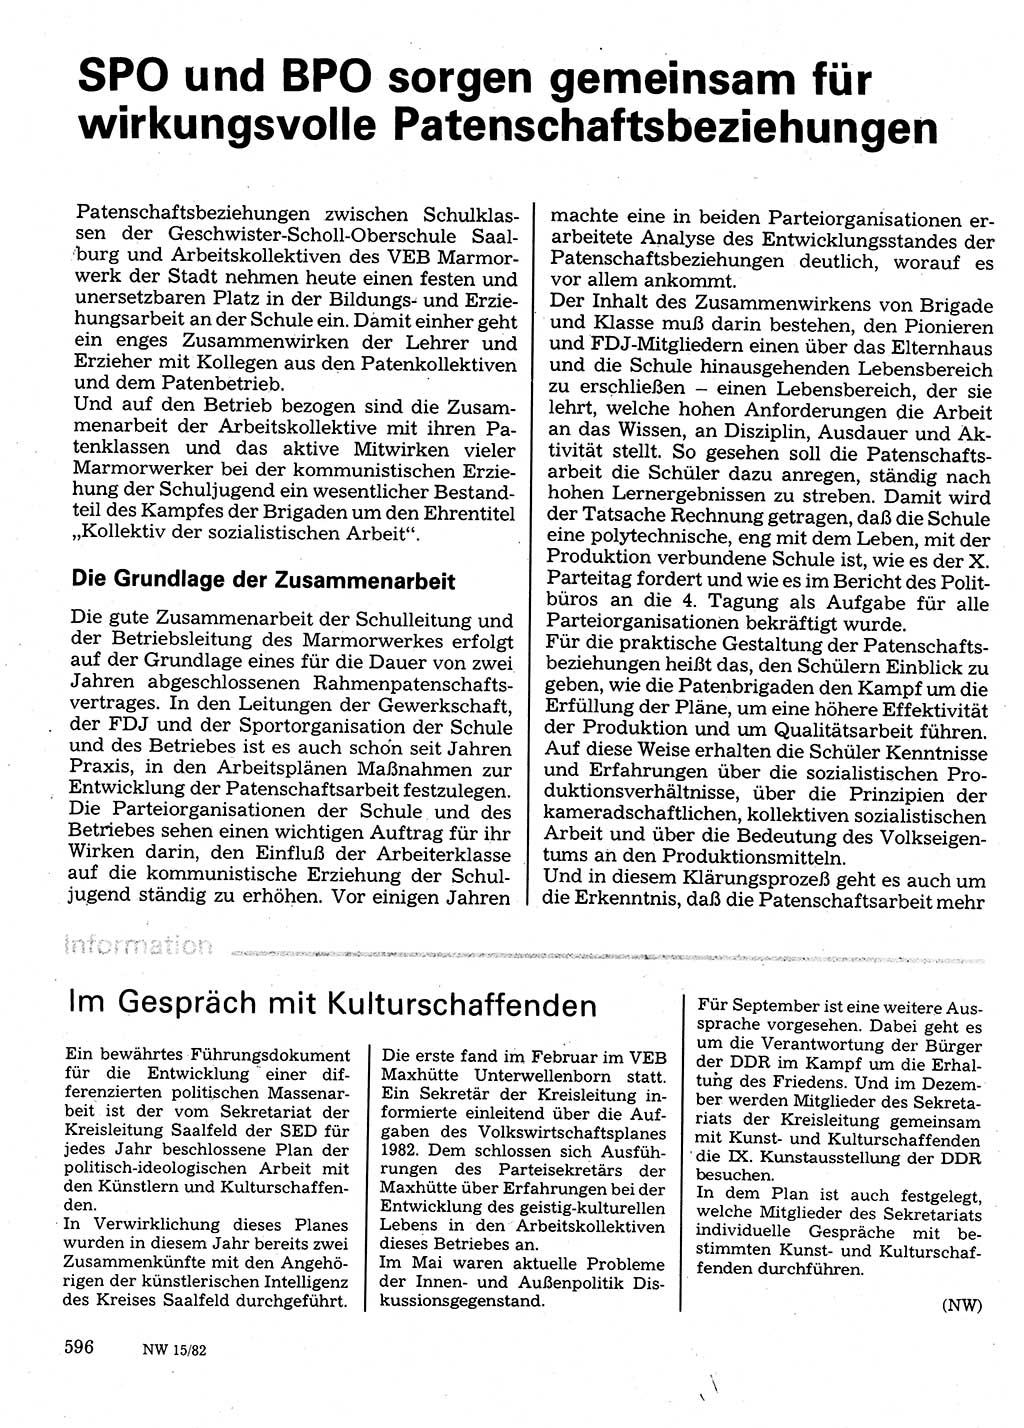 Neuer Weg (NW), Organ des Zentralkomitees (ZK) der SED (Sozialistische Einheitspartei Deutschlands) für Fragen des Parteilebens, 37. Jahrgang [Deutsche Demokratische Republik (DDR)] 1982, Seite 596 (NW ZK SED DDR 1982, S. 596)